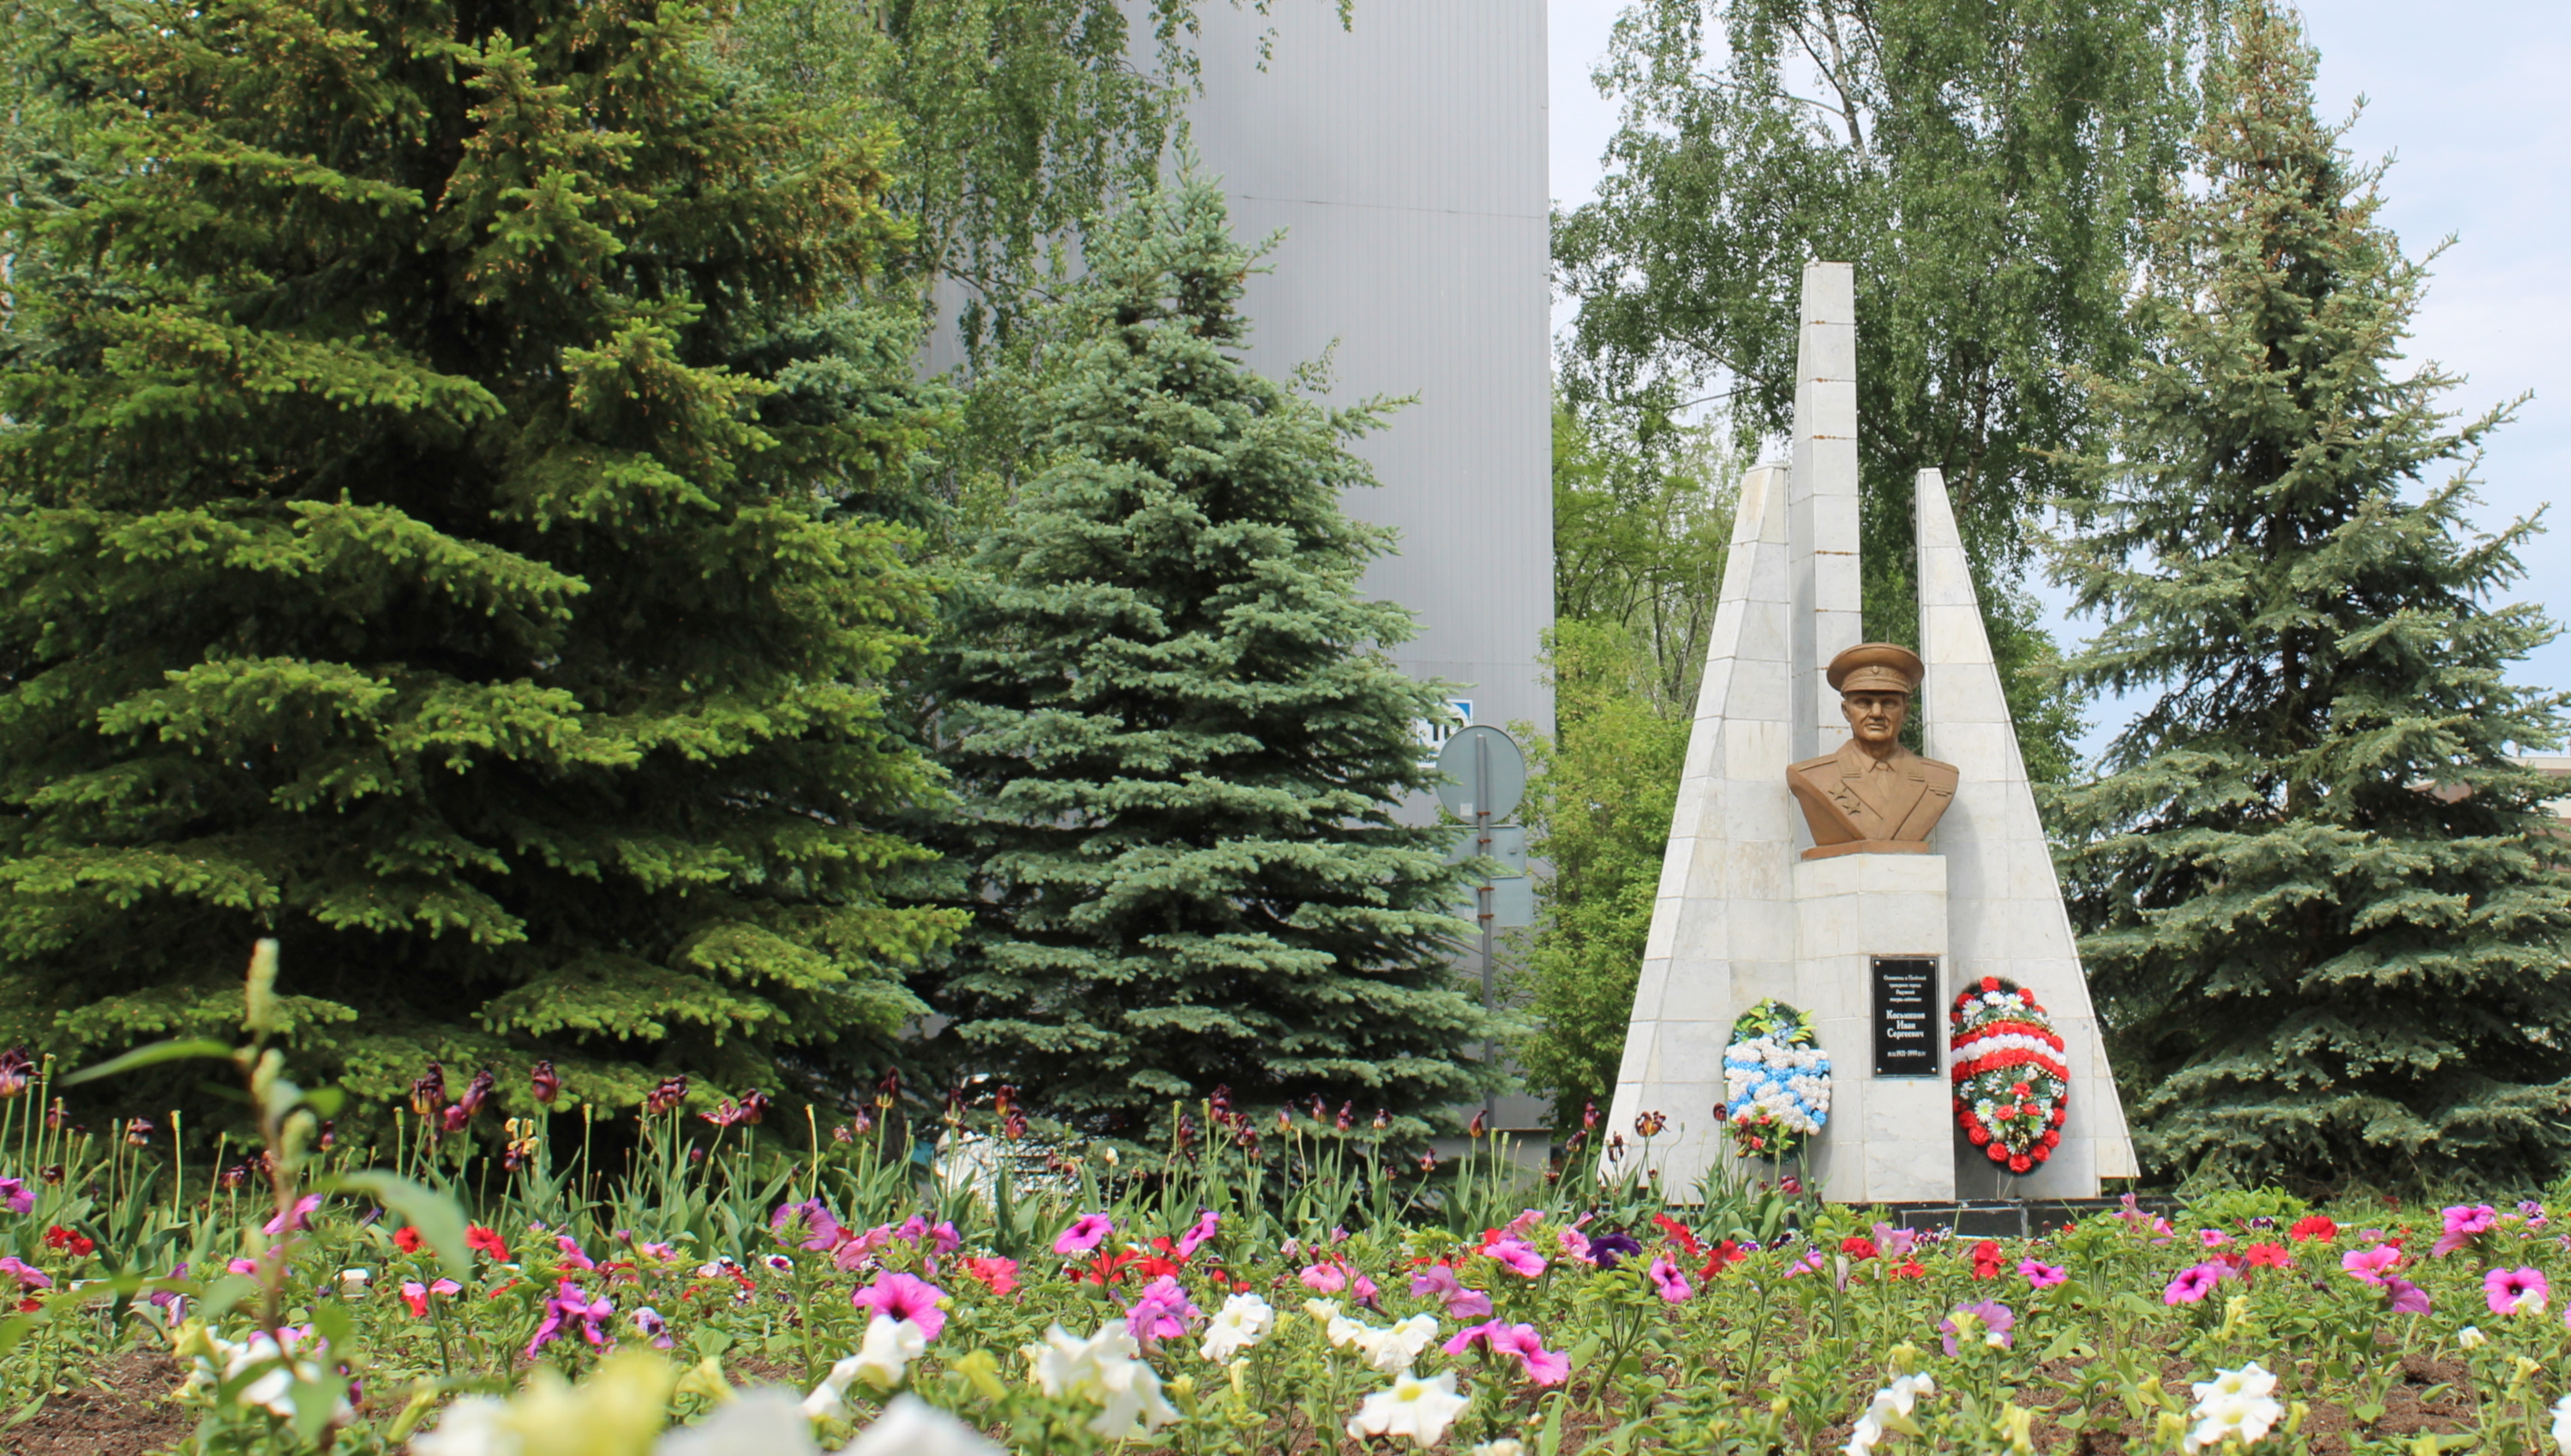 В мае 2000 года был открыт памятник основателю города И.С. Косьминову. Дважды в год - в день рождения и в день смерти Ивана Сергеевича к обелиску приходят радужане, чтобы почтить память человека, давшего жизнь городу Радужному.